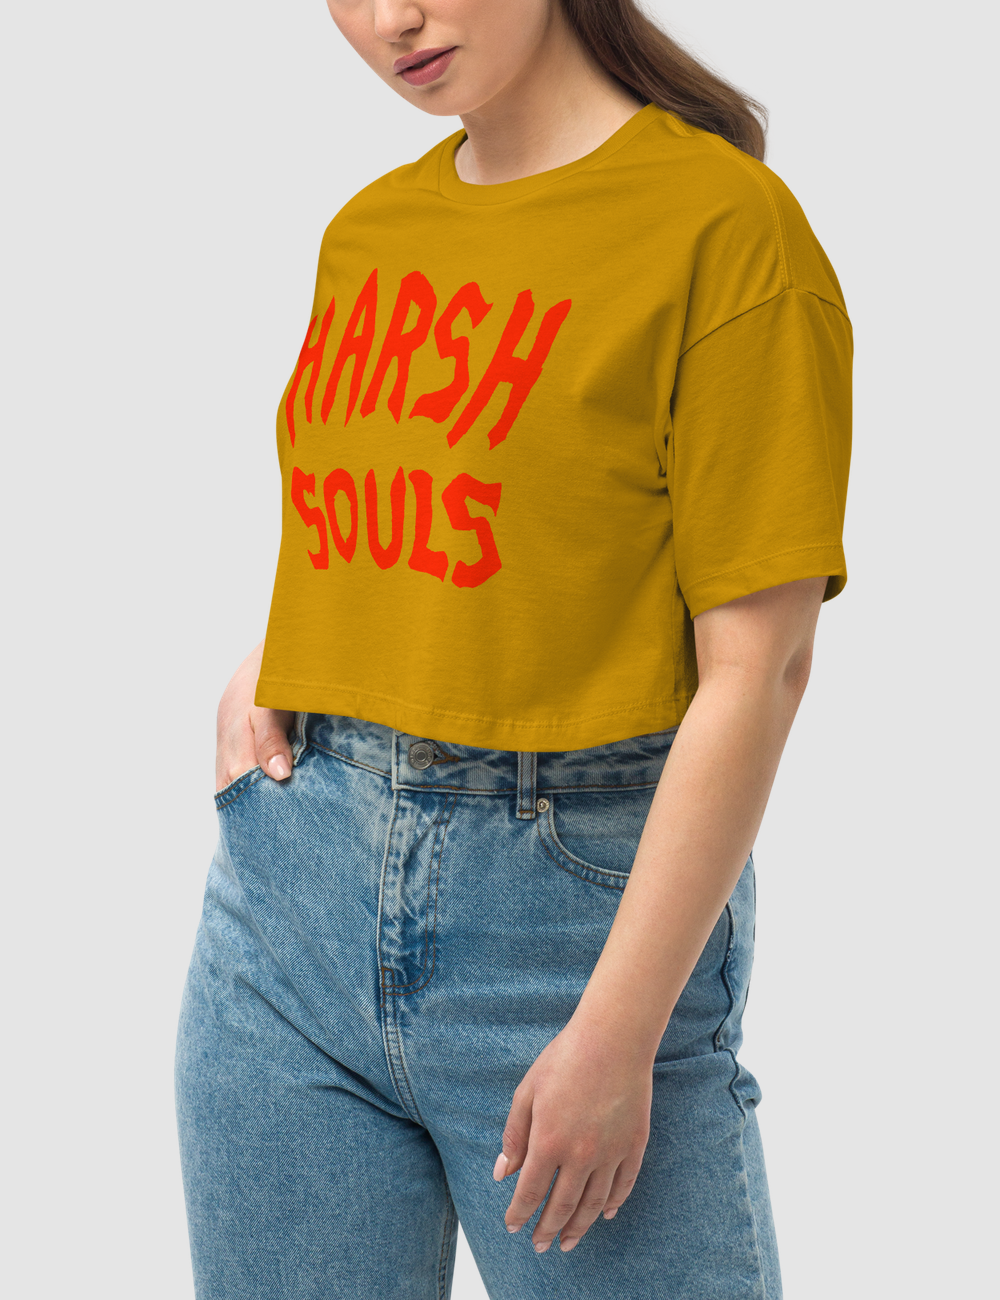 Harsh Souls (Red Print) | Women's Loose Fit Crop Top T-Shirt OniTakai